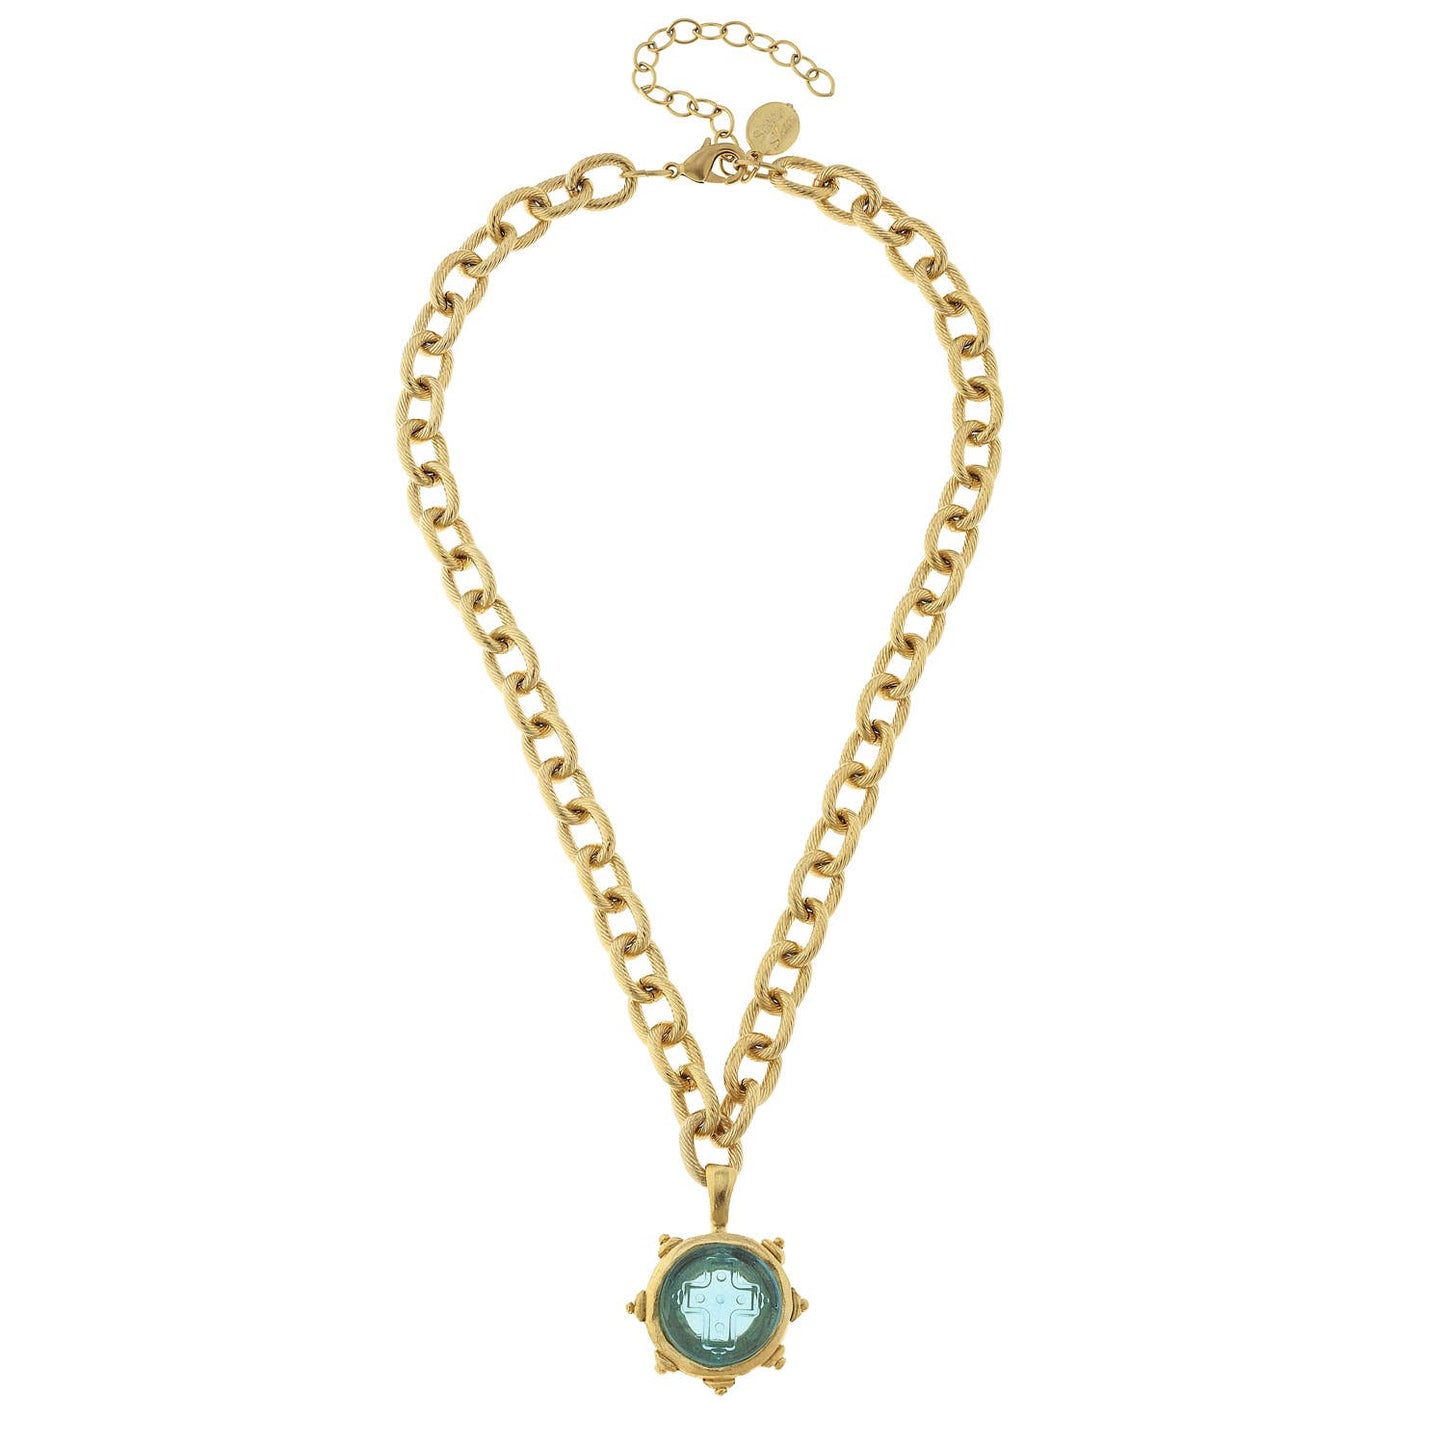 Aqua Venetian Small Glass Cross Intaglio on Gold Chain Necklace